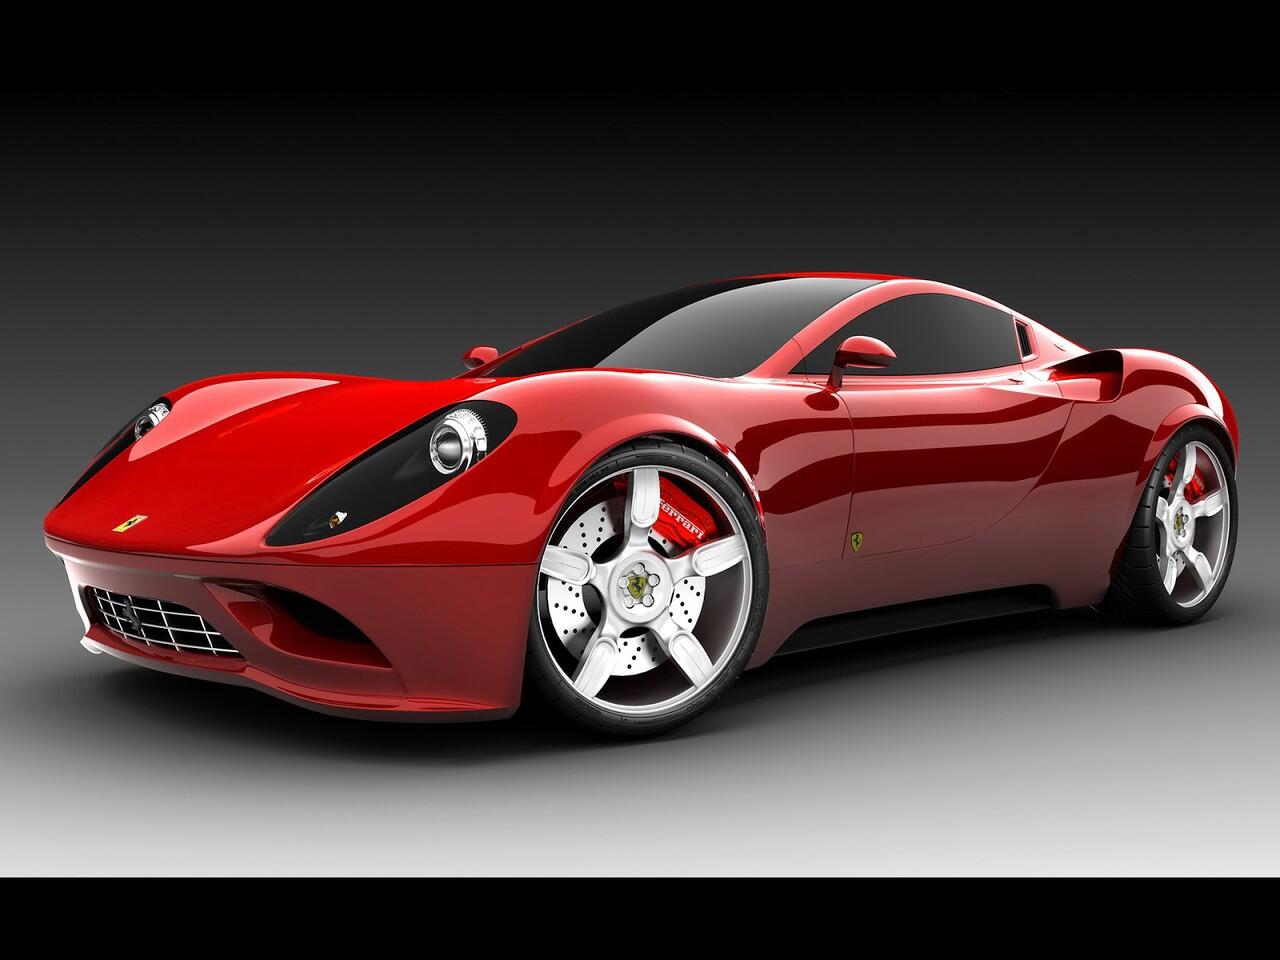 Gambar Mobil Mewah Ferrari Keren Gan KASKUS